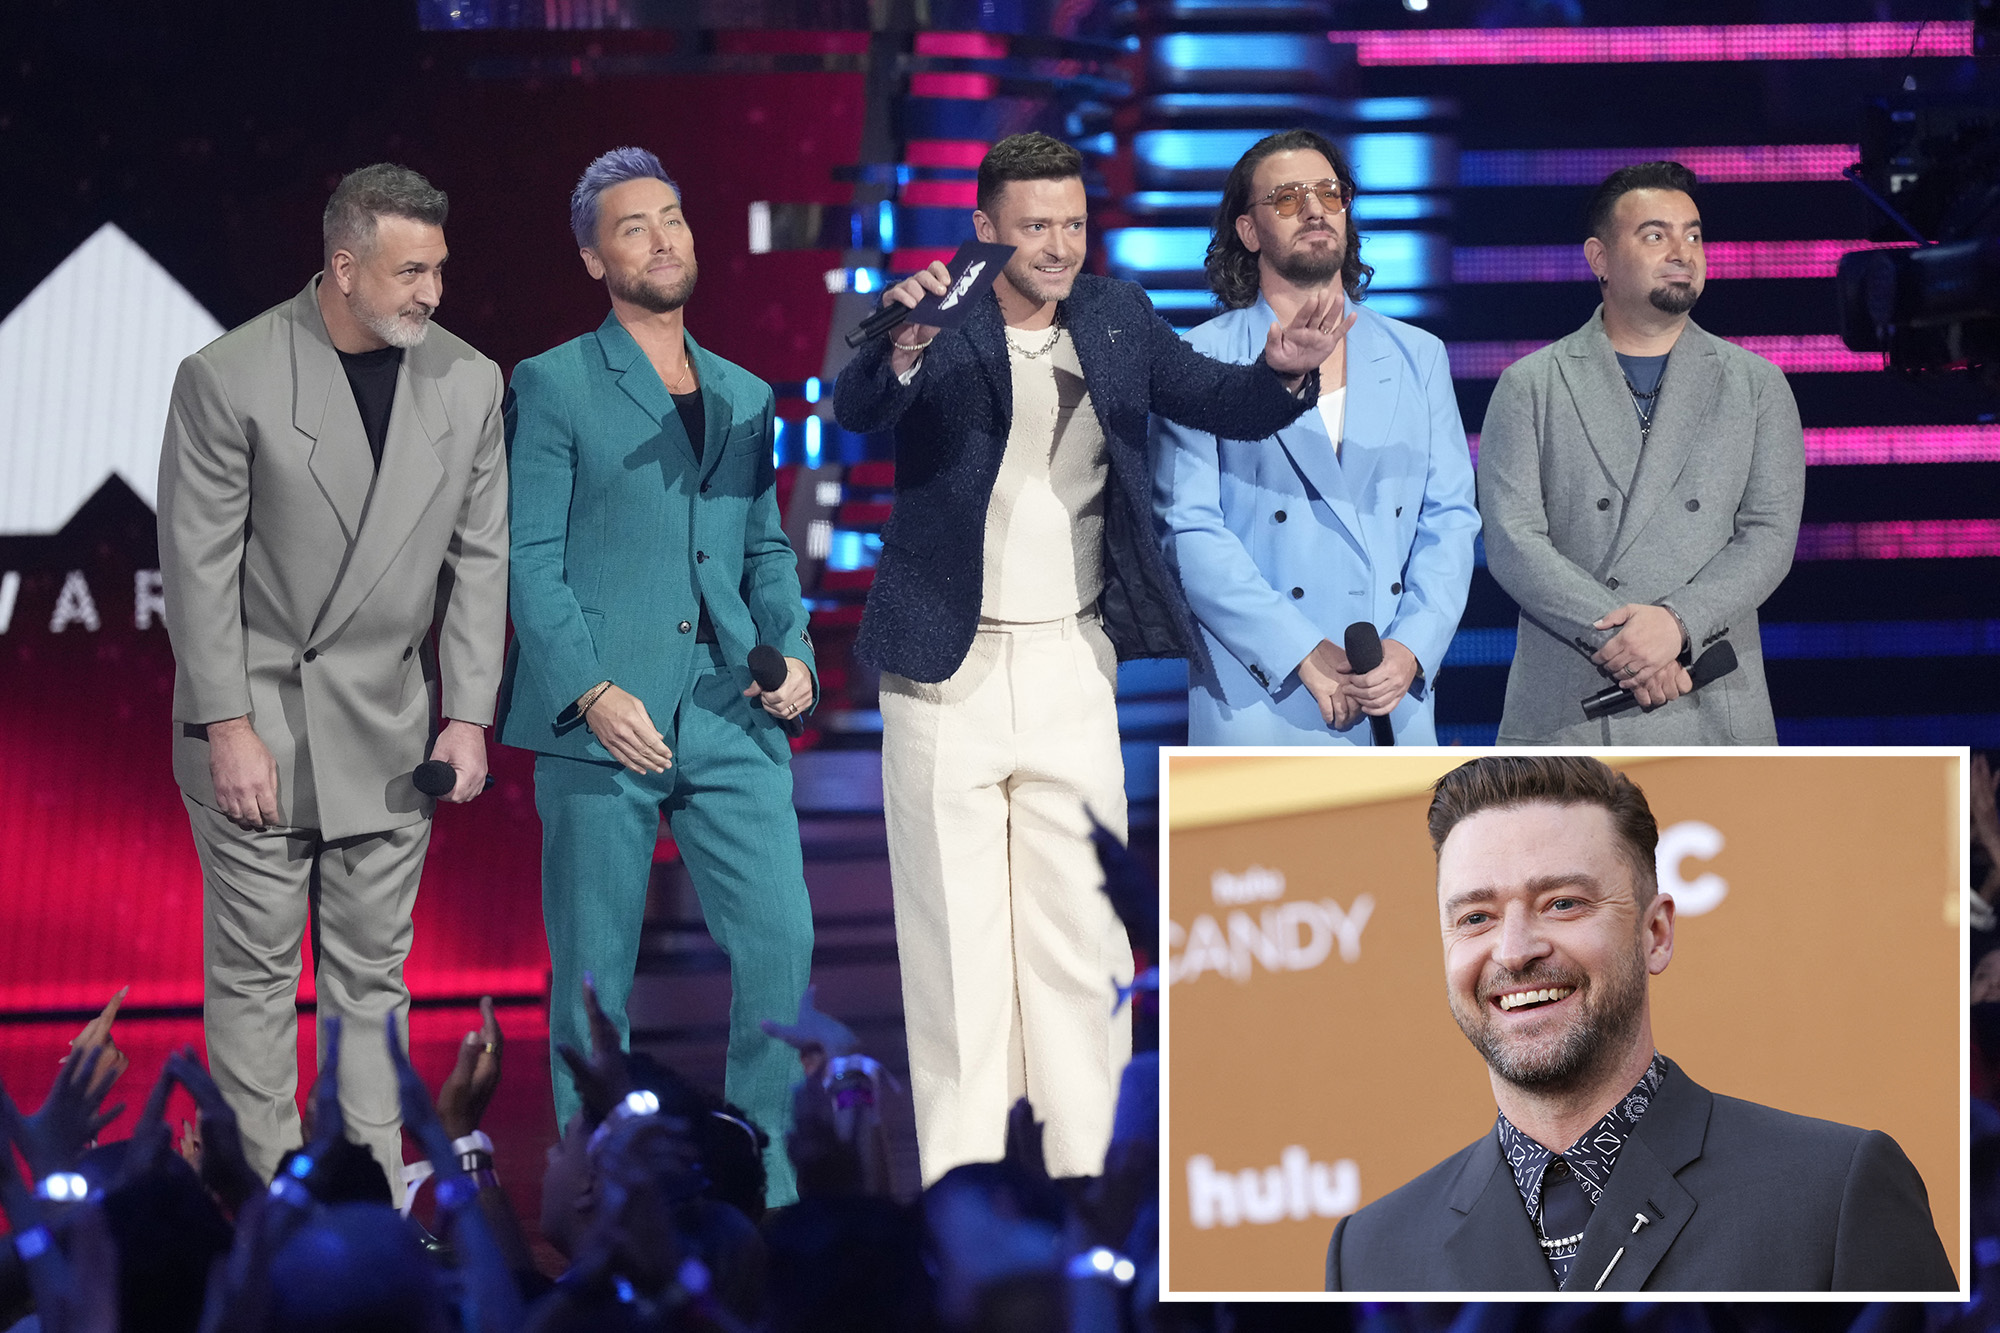 Justin Timberlake seemingly confirms new *NSYNC song ‘Paradise’ on his upcoming album